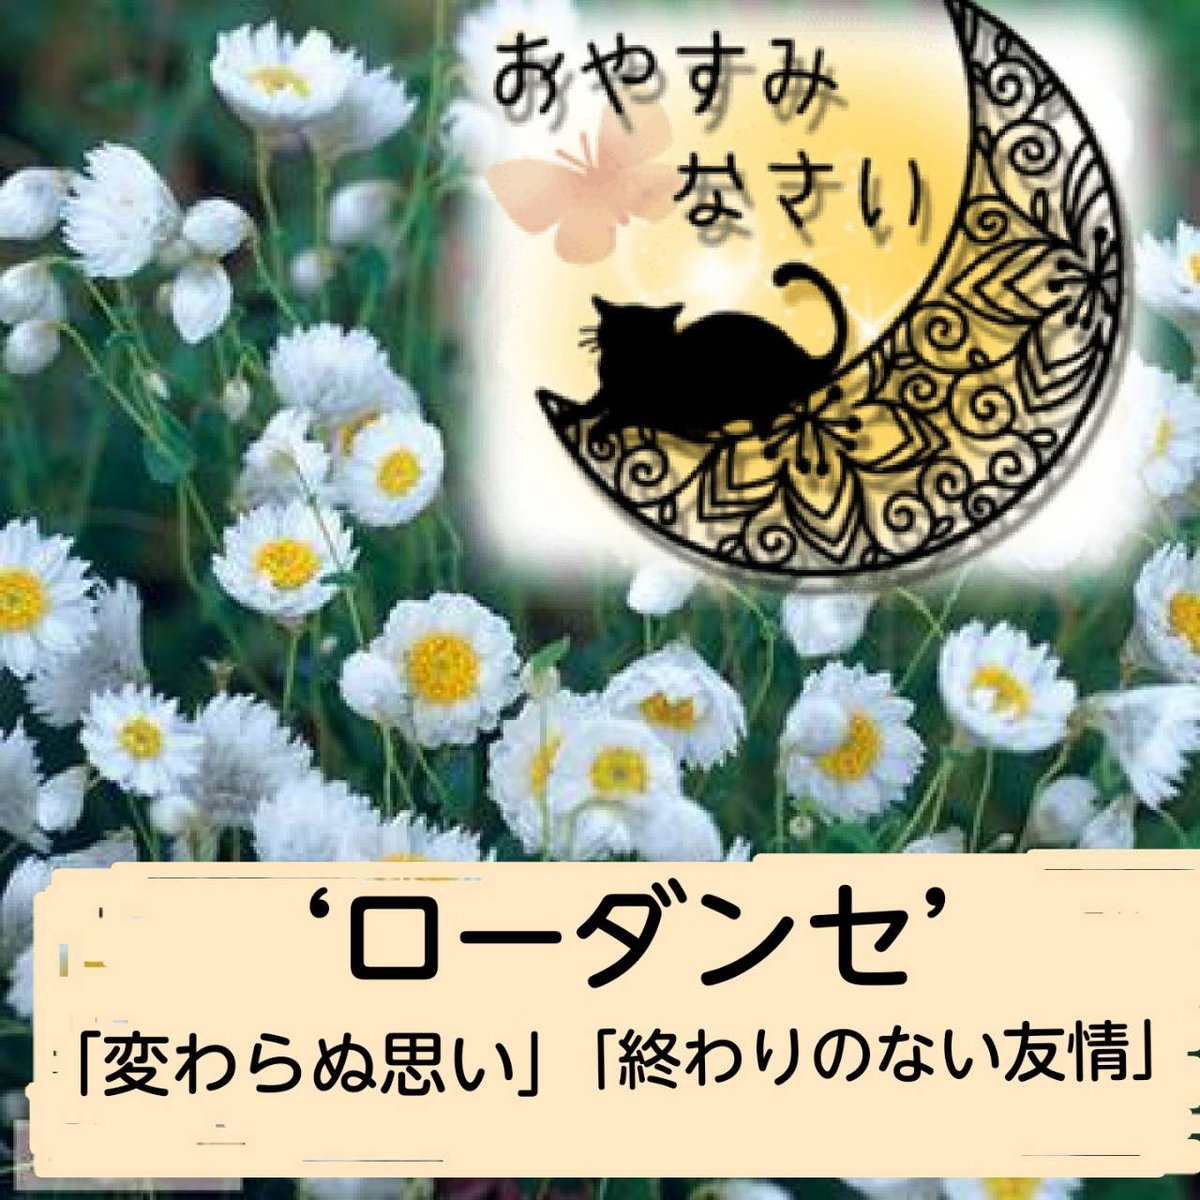 竹島宏 Hiroshi Takeshima 公式 ローダンセ 白 花言葉は 変わらぬ思い 終わりのない友情 花の裏側の模様もオシャレ なんです ドライフラワー にもオススメです 今日も１日お疲れ様でした ひろネット 花便り 花言葉 花 花を贈ろう